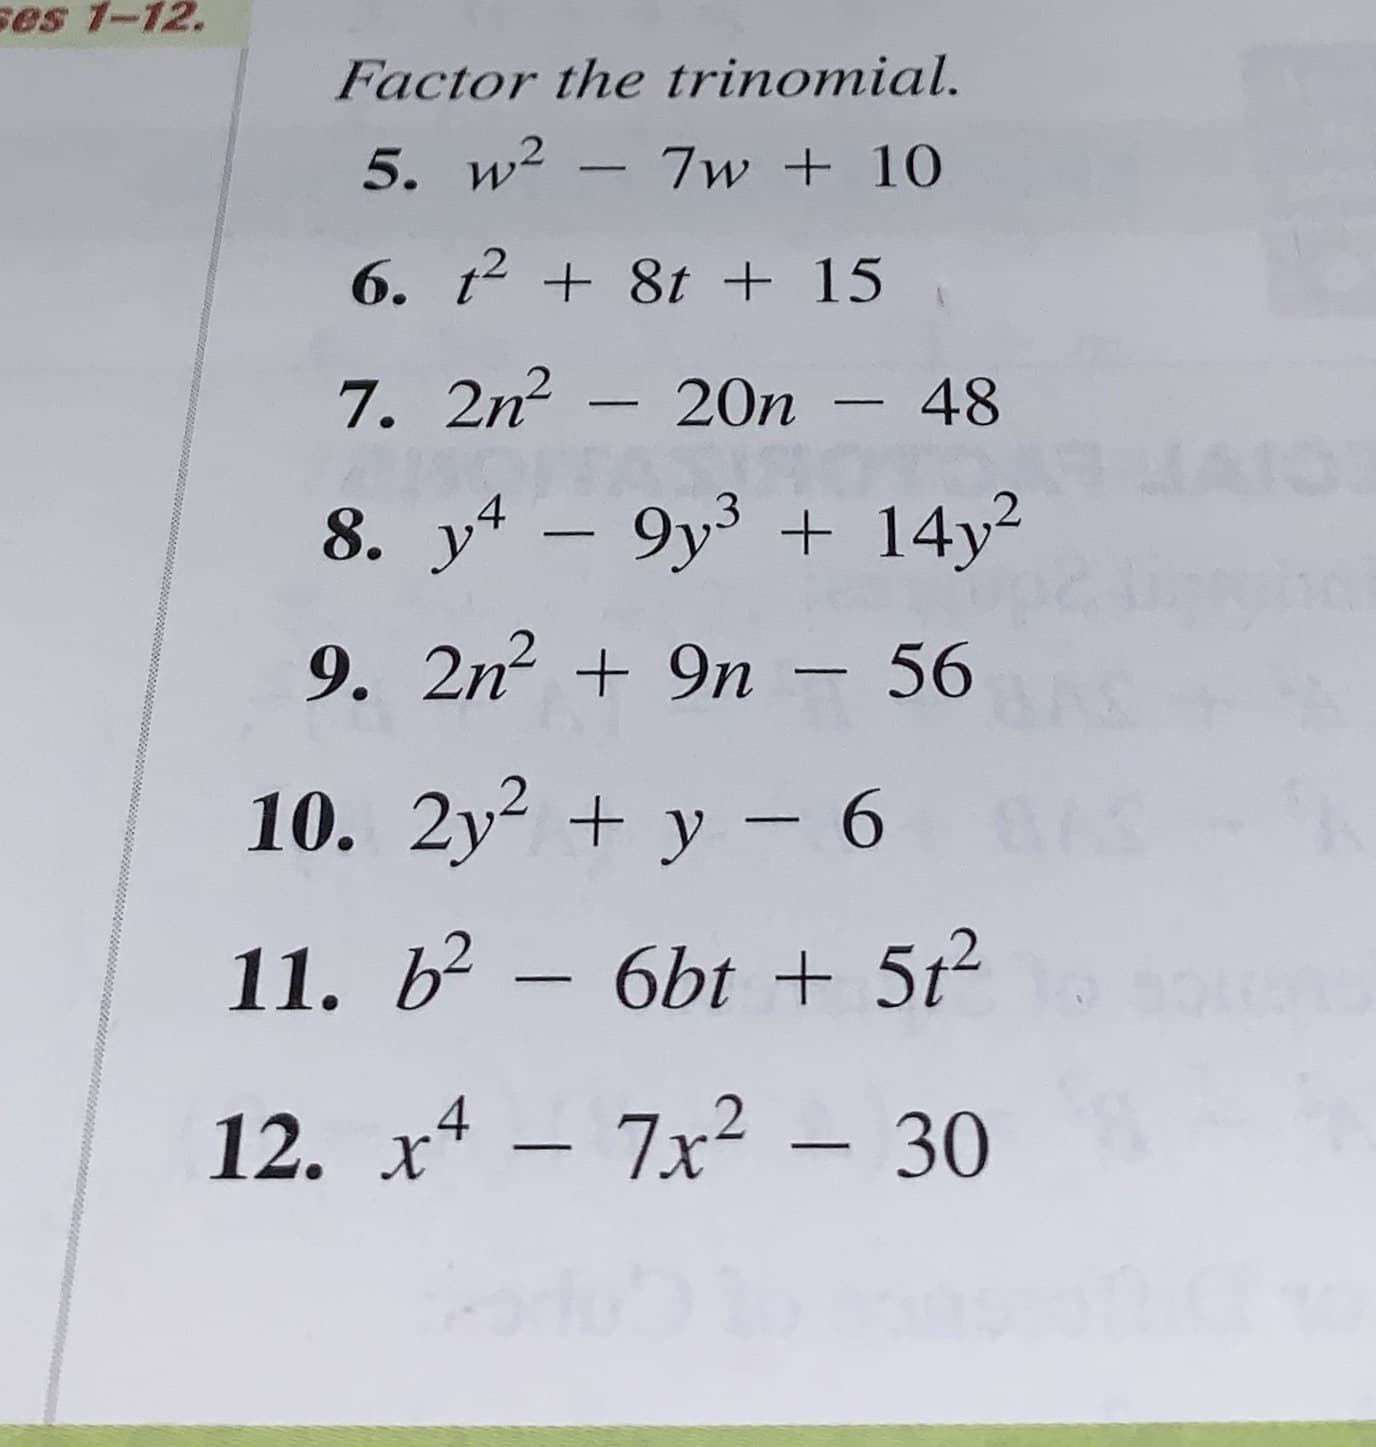 ses 1-12.
Factor the trinomial.
5. w2
7w+10
6. t 8t + 15
7. 2n- 20n - 48
8. y-9y3 14y2
9. 2n
9n - 56
10. 2y
y 6
11. b2- 6bt +5t2
7x2-30
12. х4
